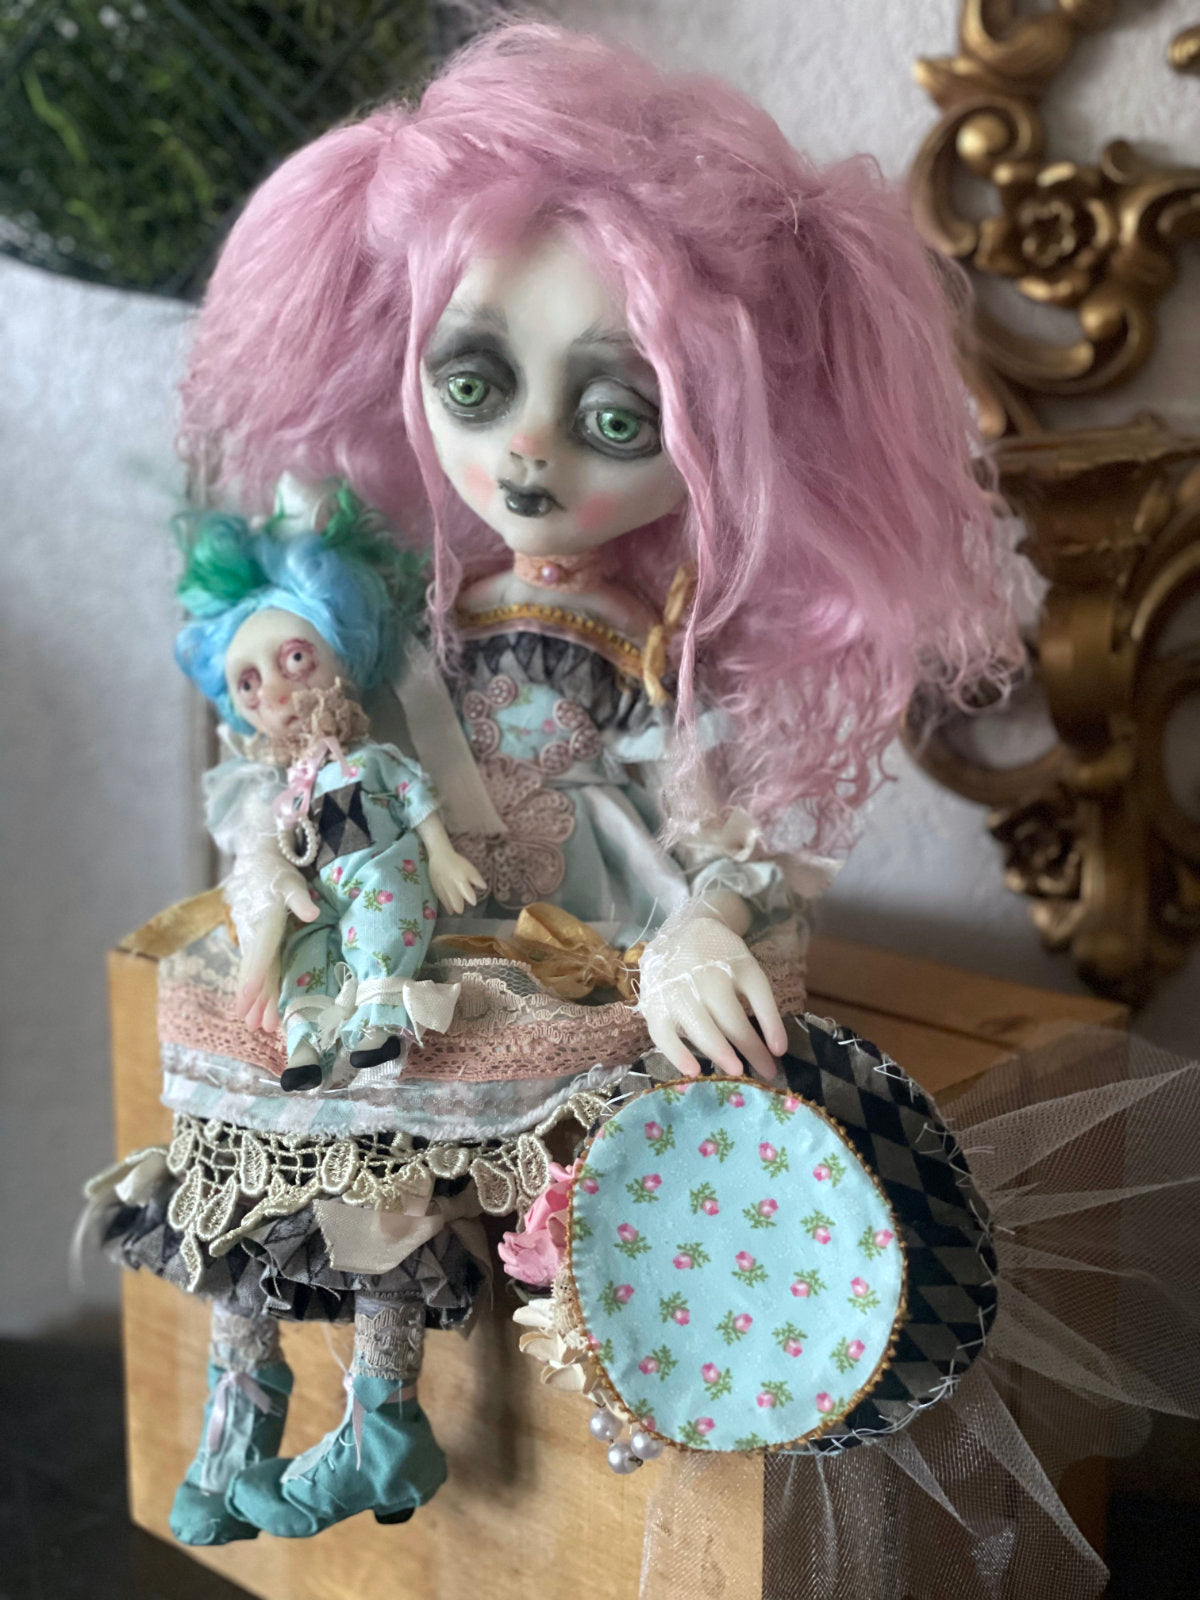 Fanta Spring Biter Vampire Sitter Original LuLu Lancaster Art Doll